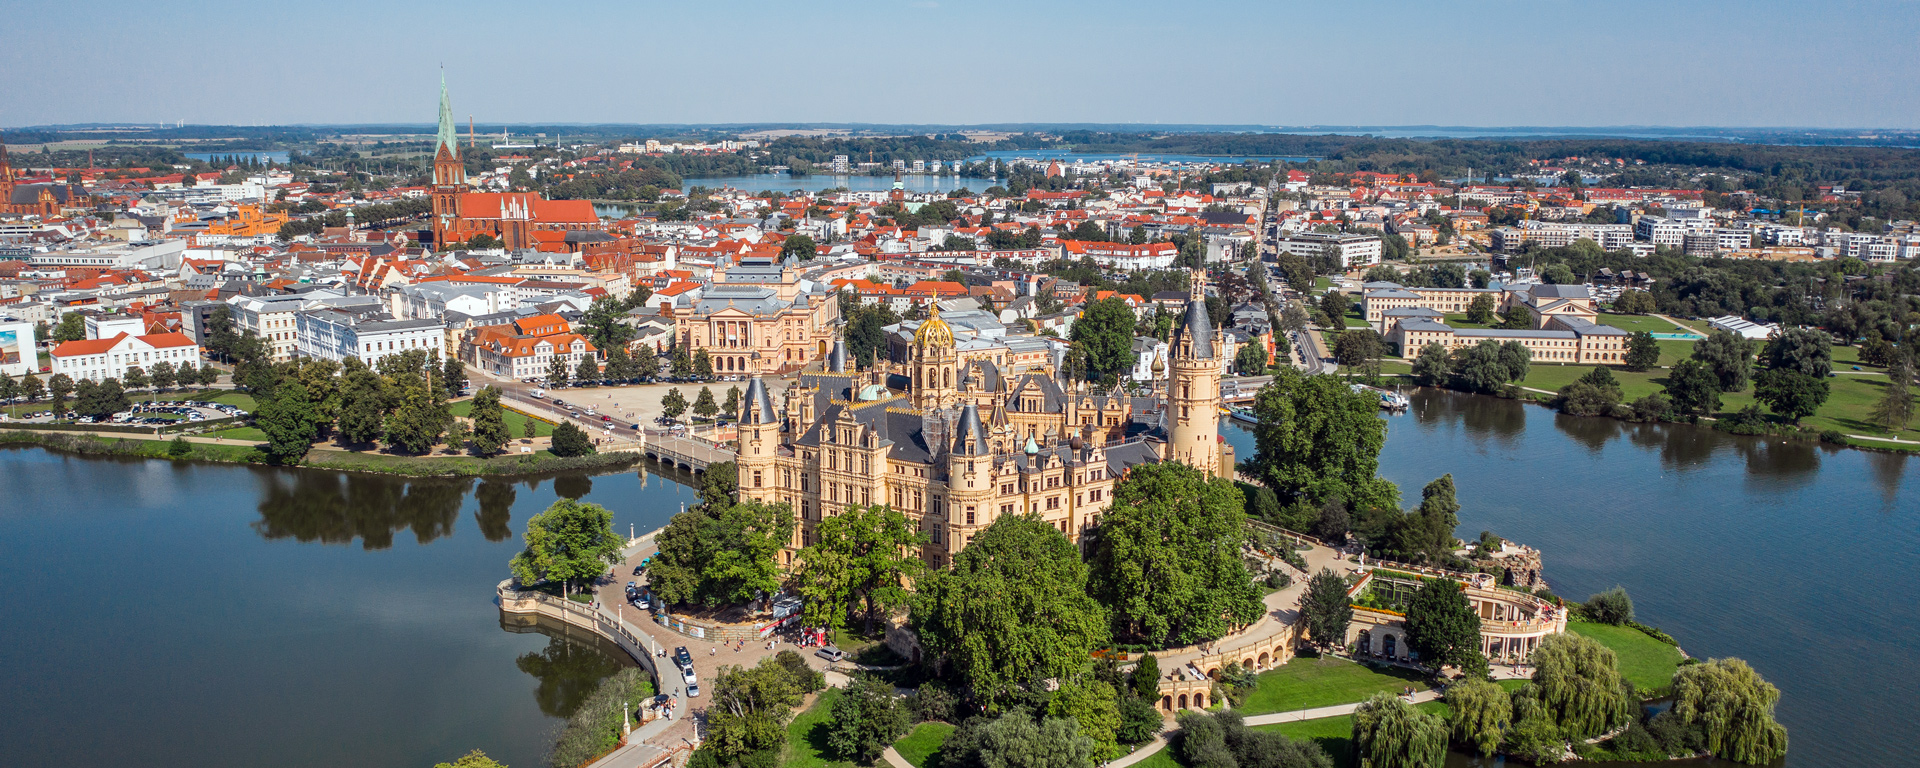 Blick aus der Luft auf das Schloss Schwerin und die dahinterliegende Innenstadt